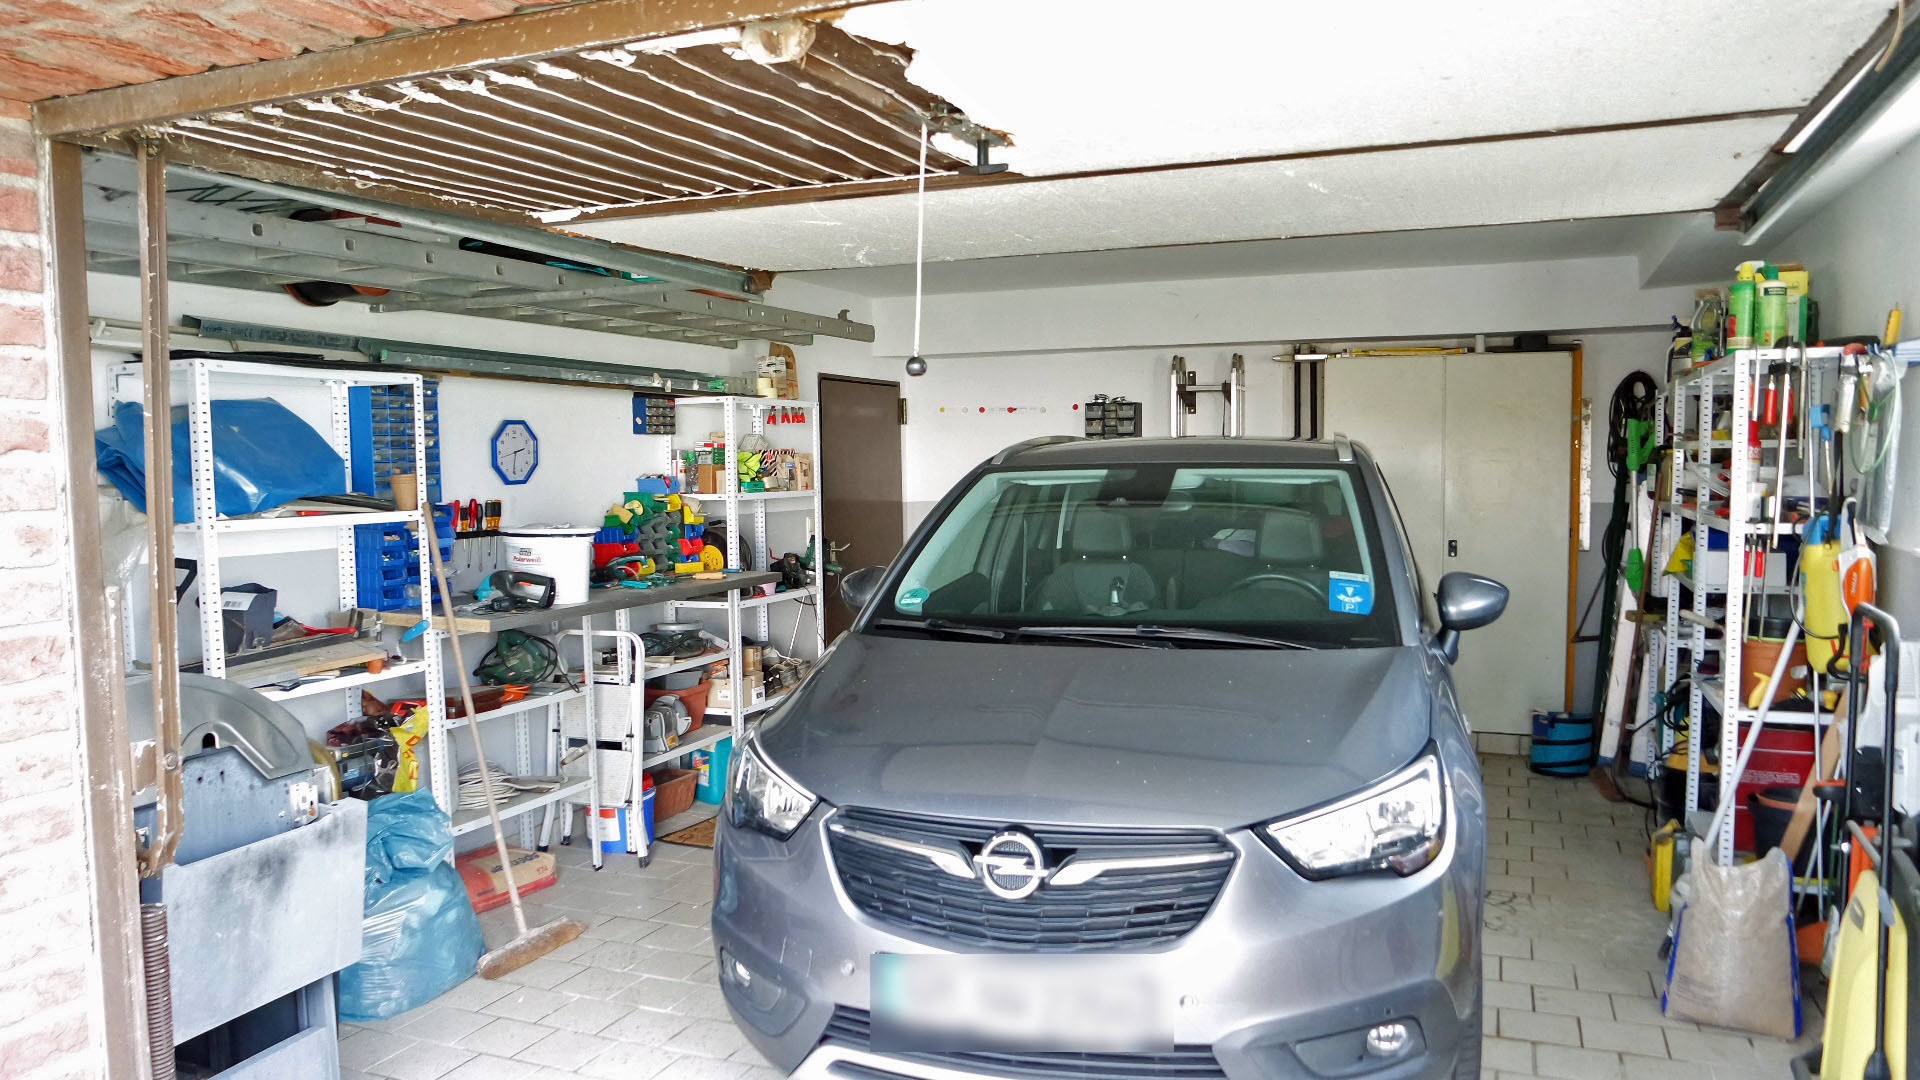 Morsbach-Stockshöhe: Bungalow mit Keller und Garage, im Haus integrierte Garage